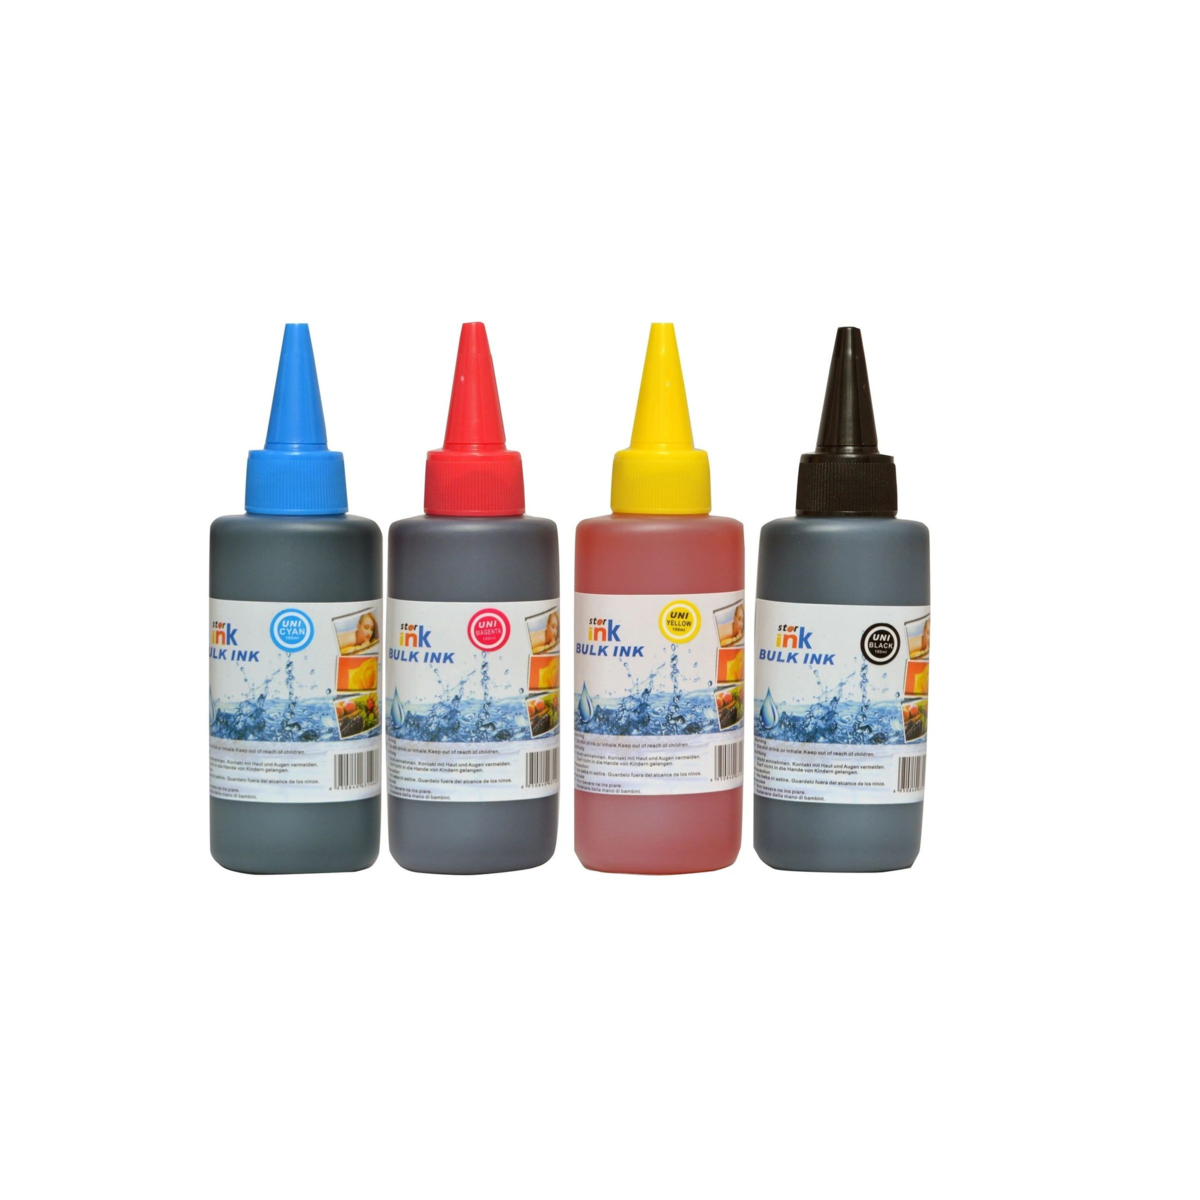 Starink Starink kompatibilní láhve s inkoustem HP 4 x 100 ml - univerzální (Černá + 3x Barvy)